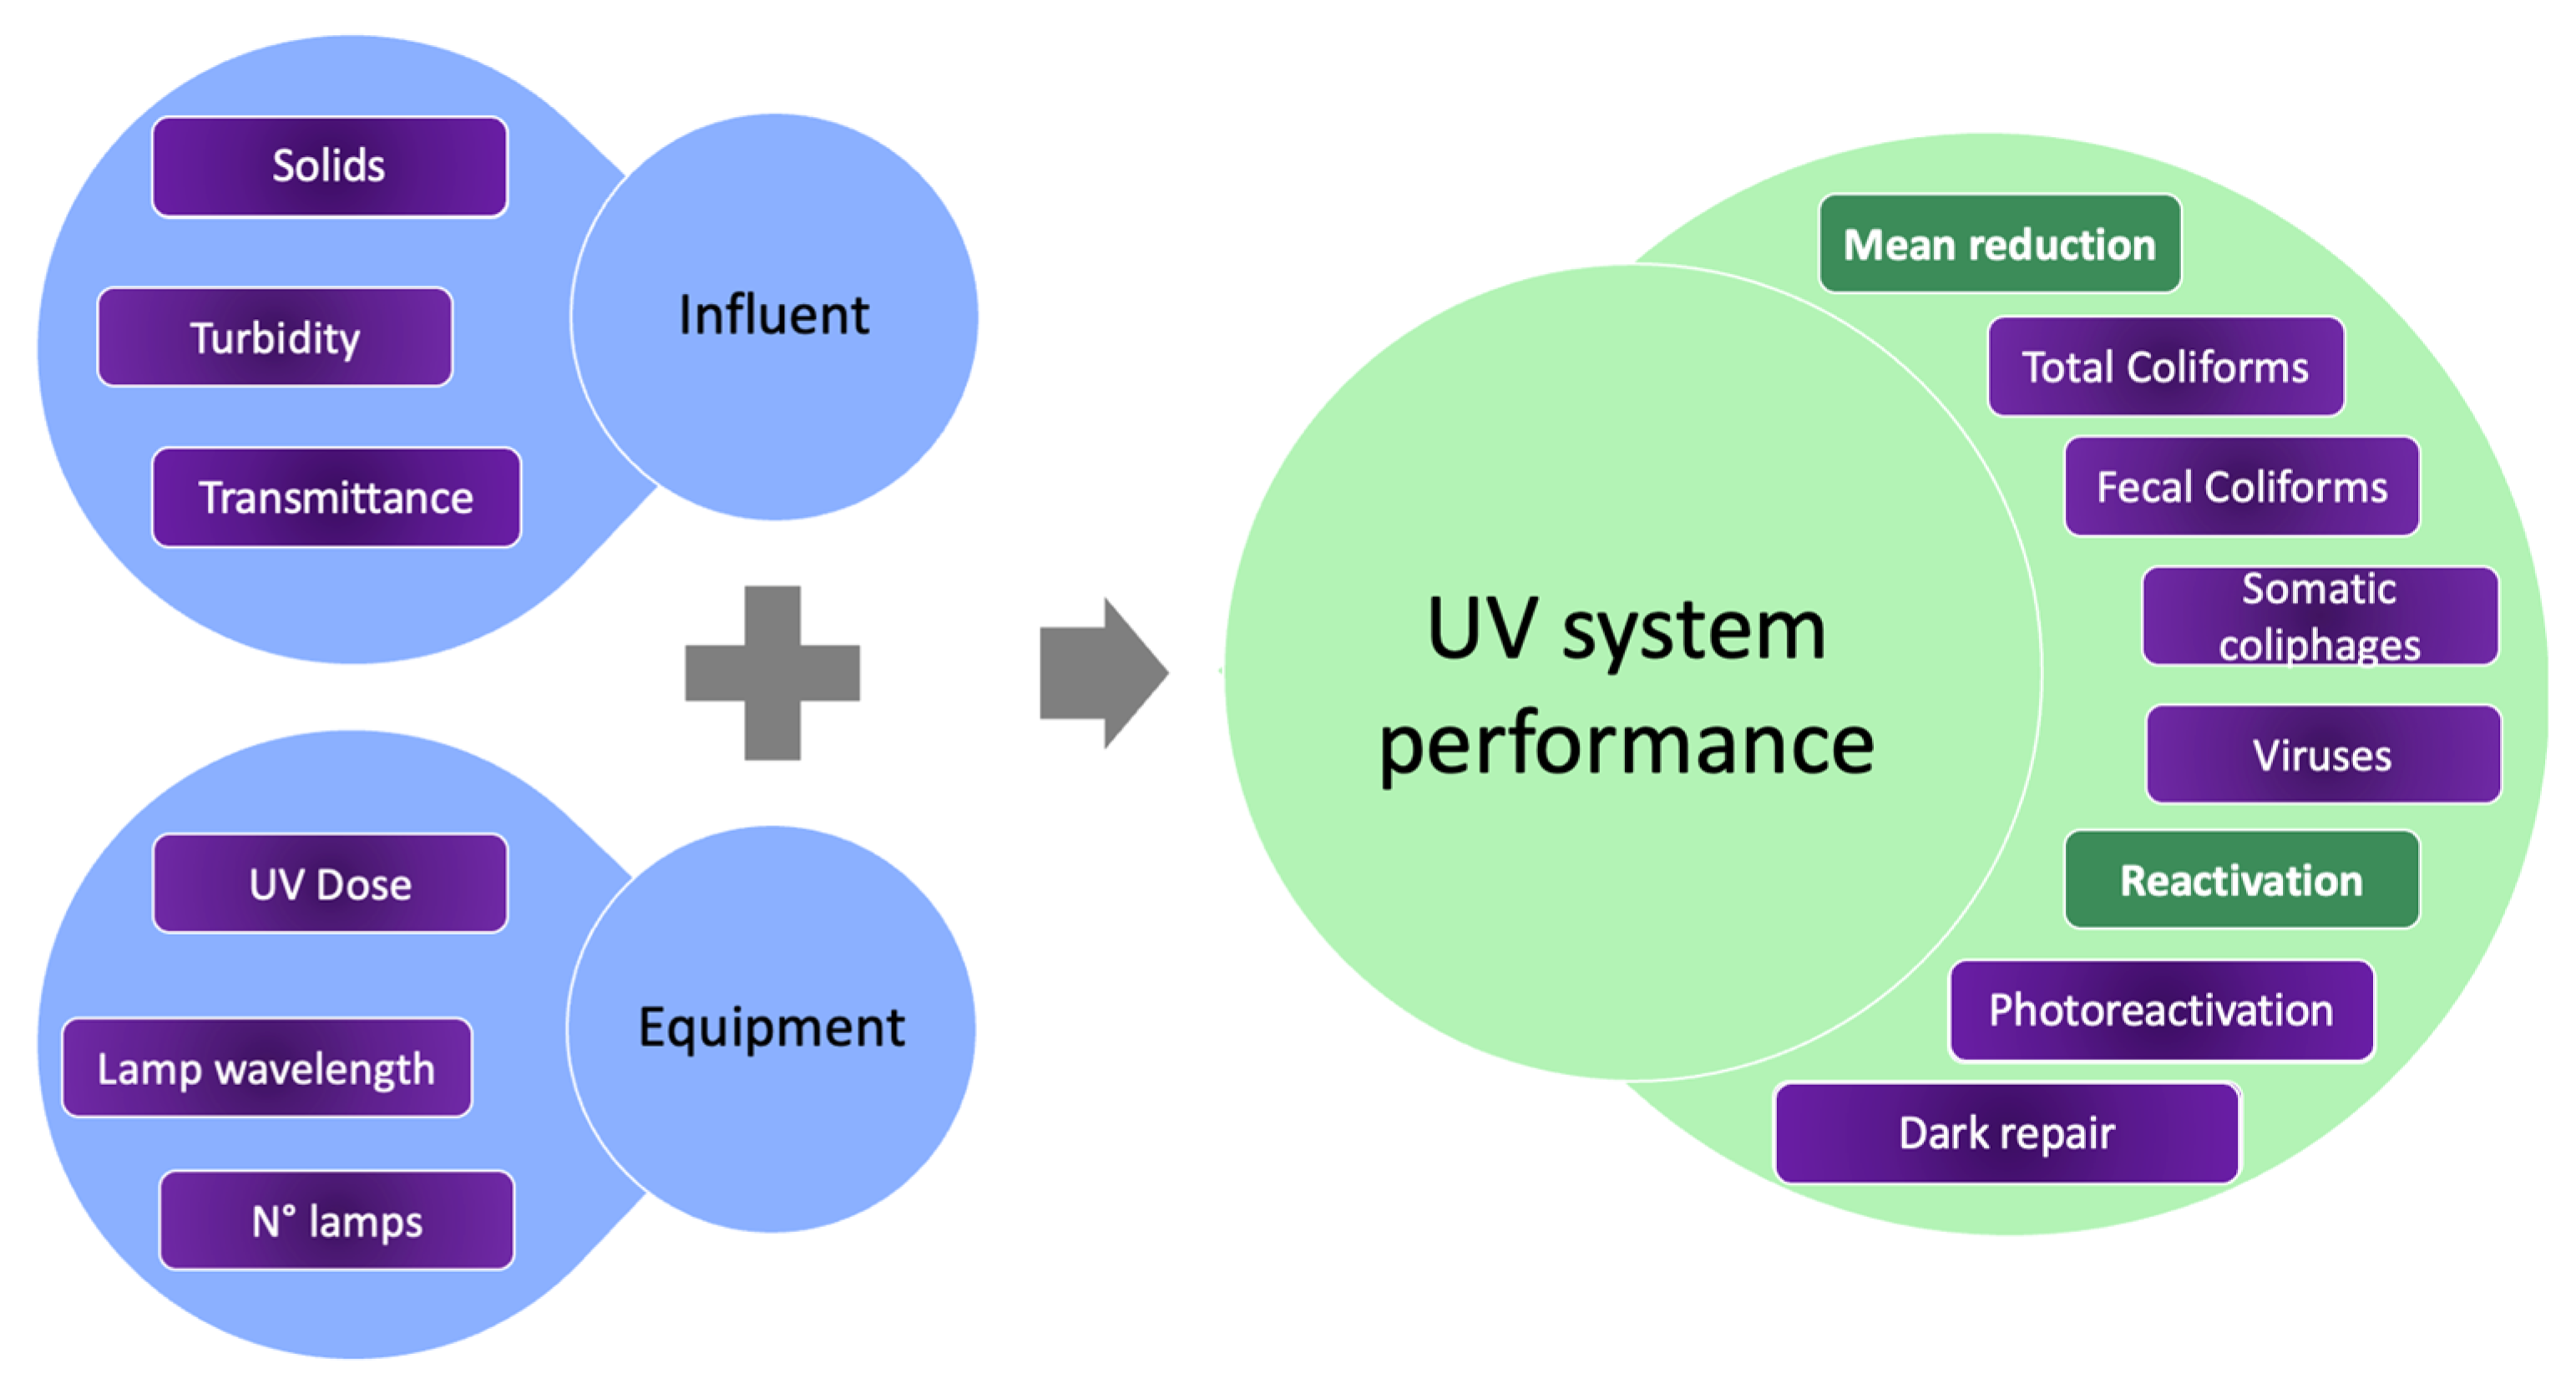 UV Lamp For Spectrum 57 LPM UV Disinfection System